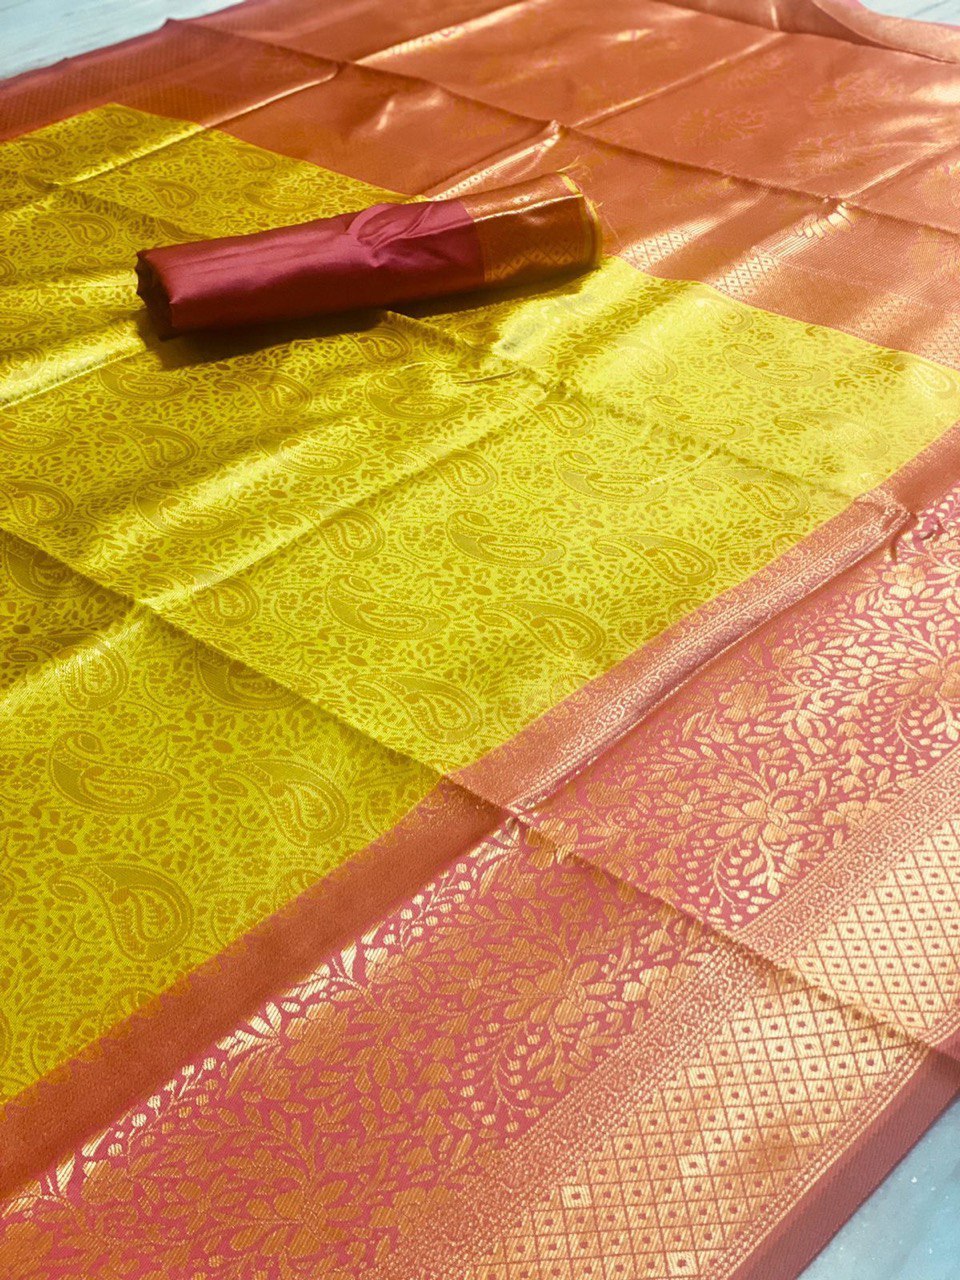 Traditional Banarasi Soft Silk Saree showcasing intricate Kadwa weaving patterns